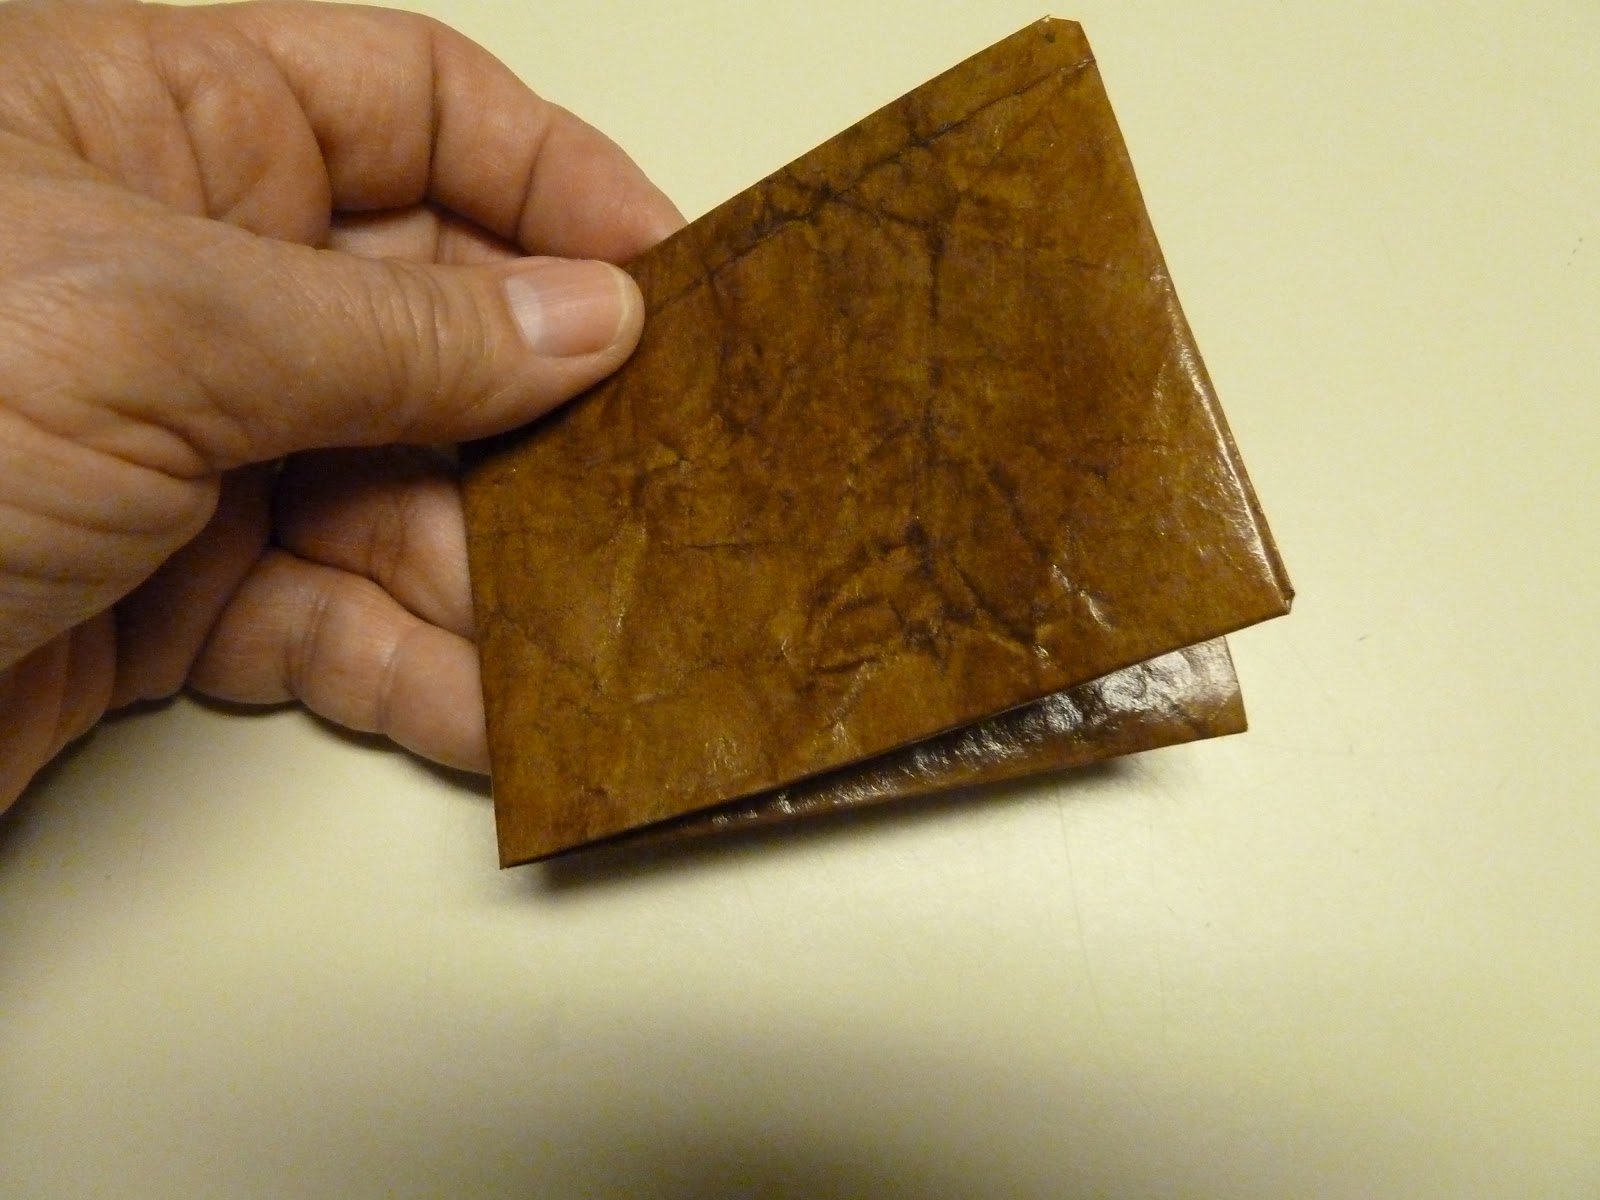 Plazmalab  origami wallet- brown